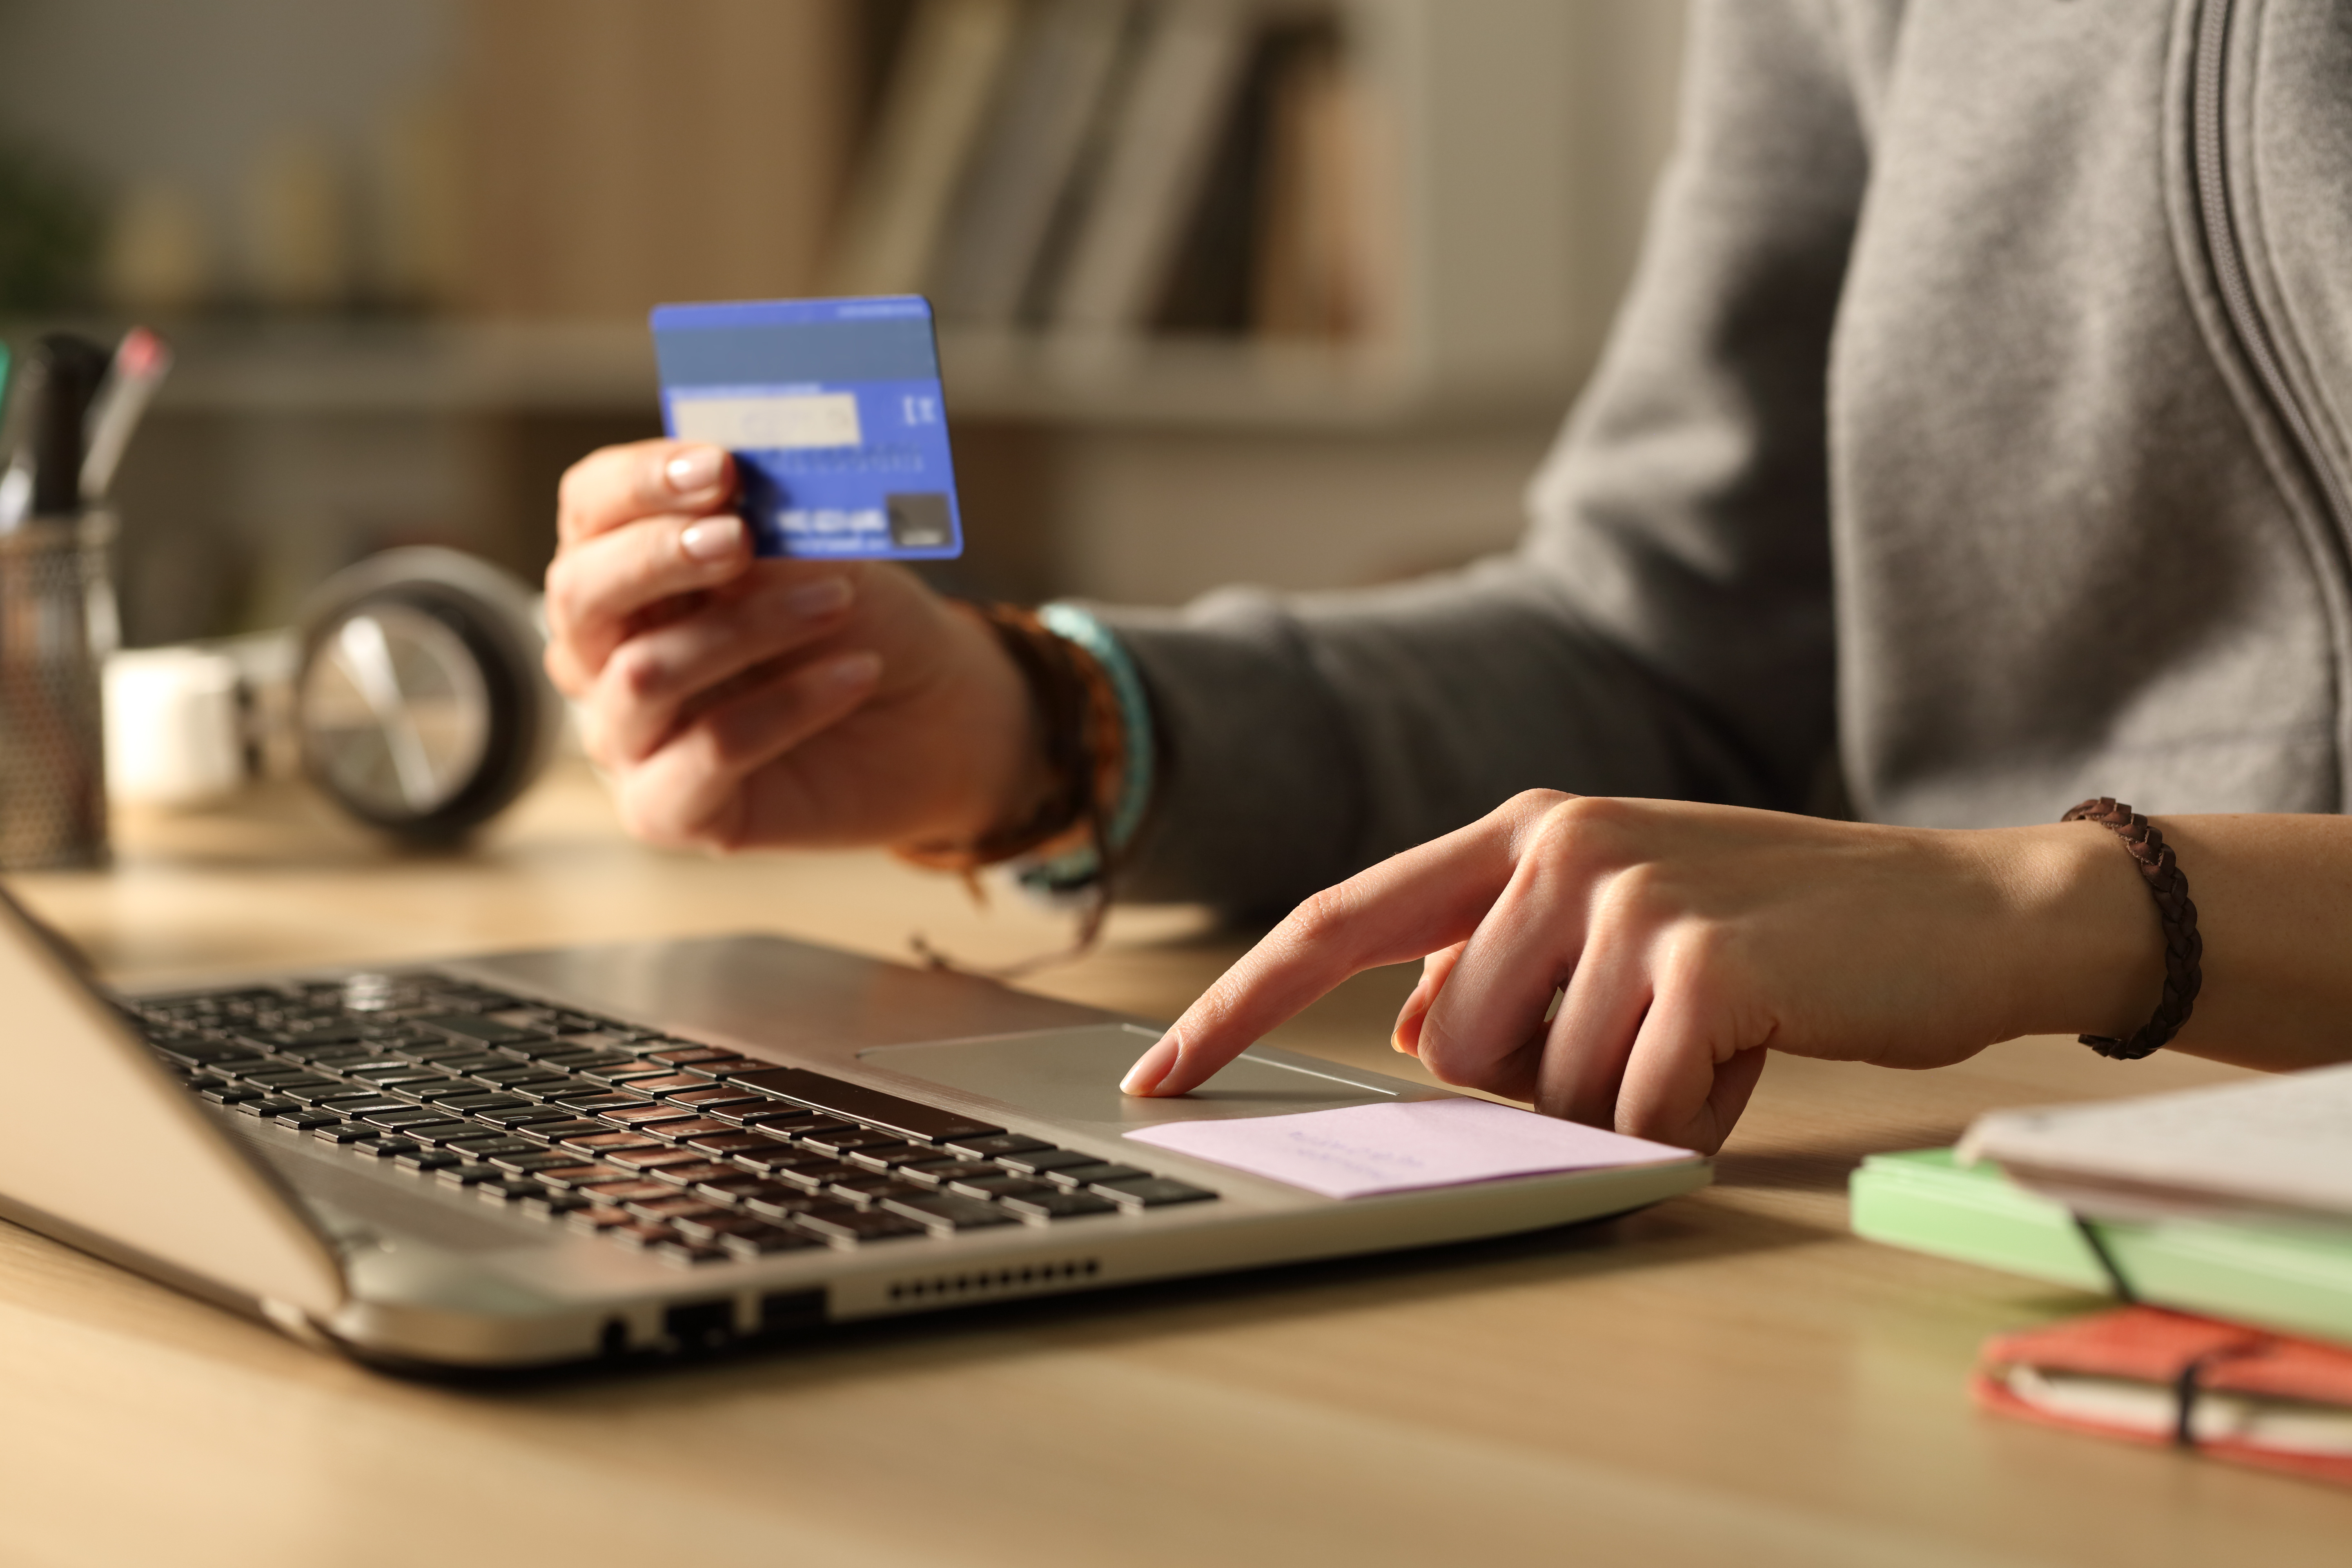 Entenda que o limite inicial do cartão de crédito varia de acordo com o análise financeira realizada pelo banco. Fonte: Adobe Stock.